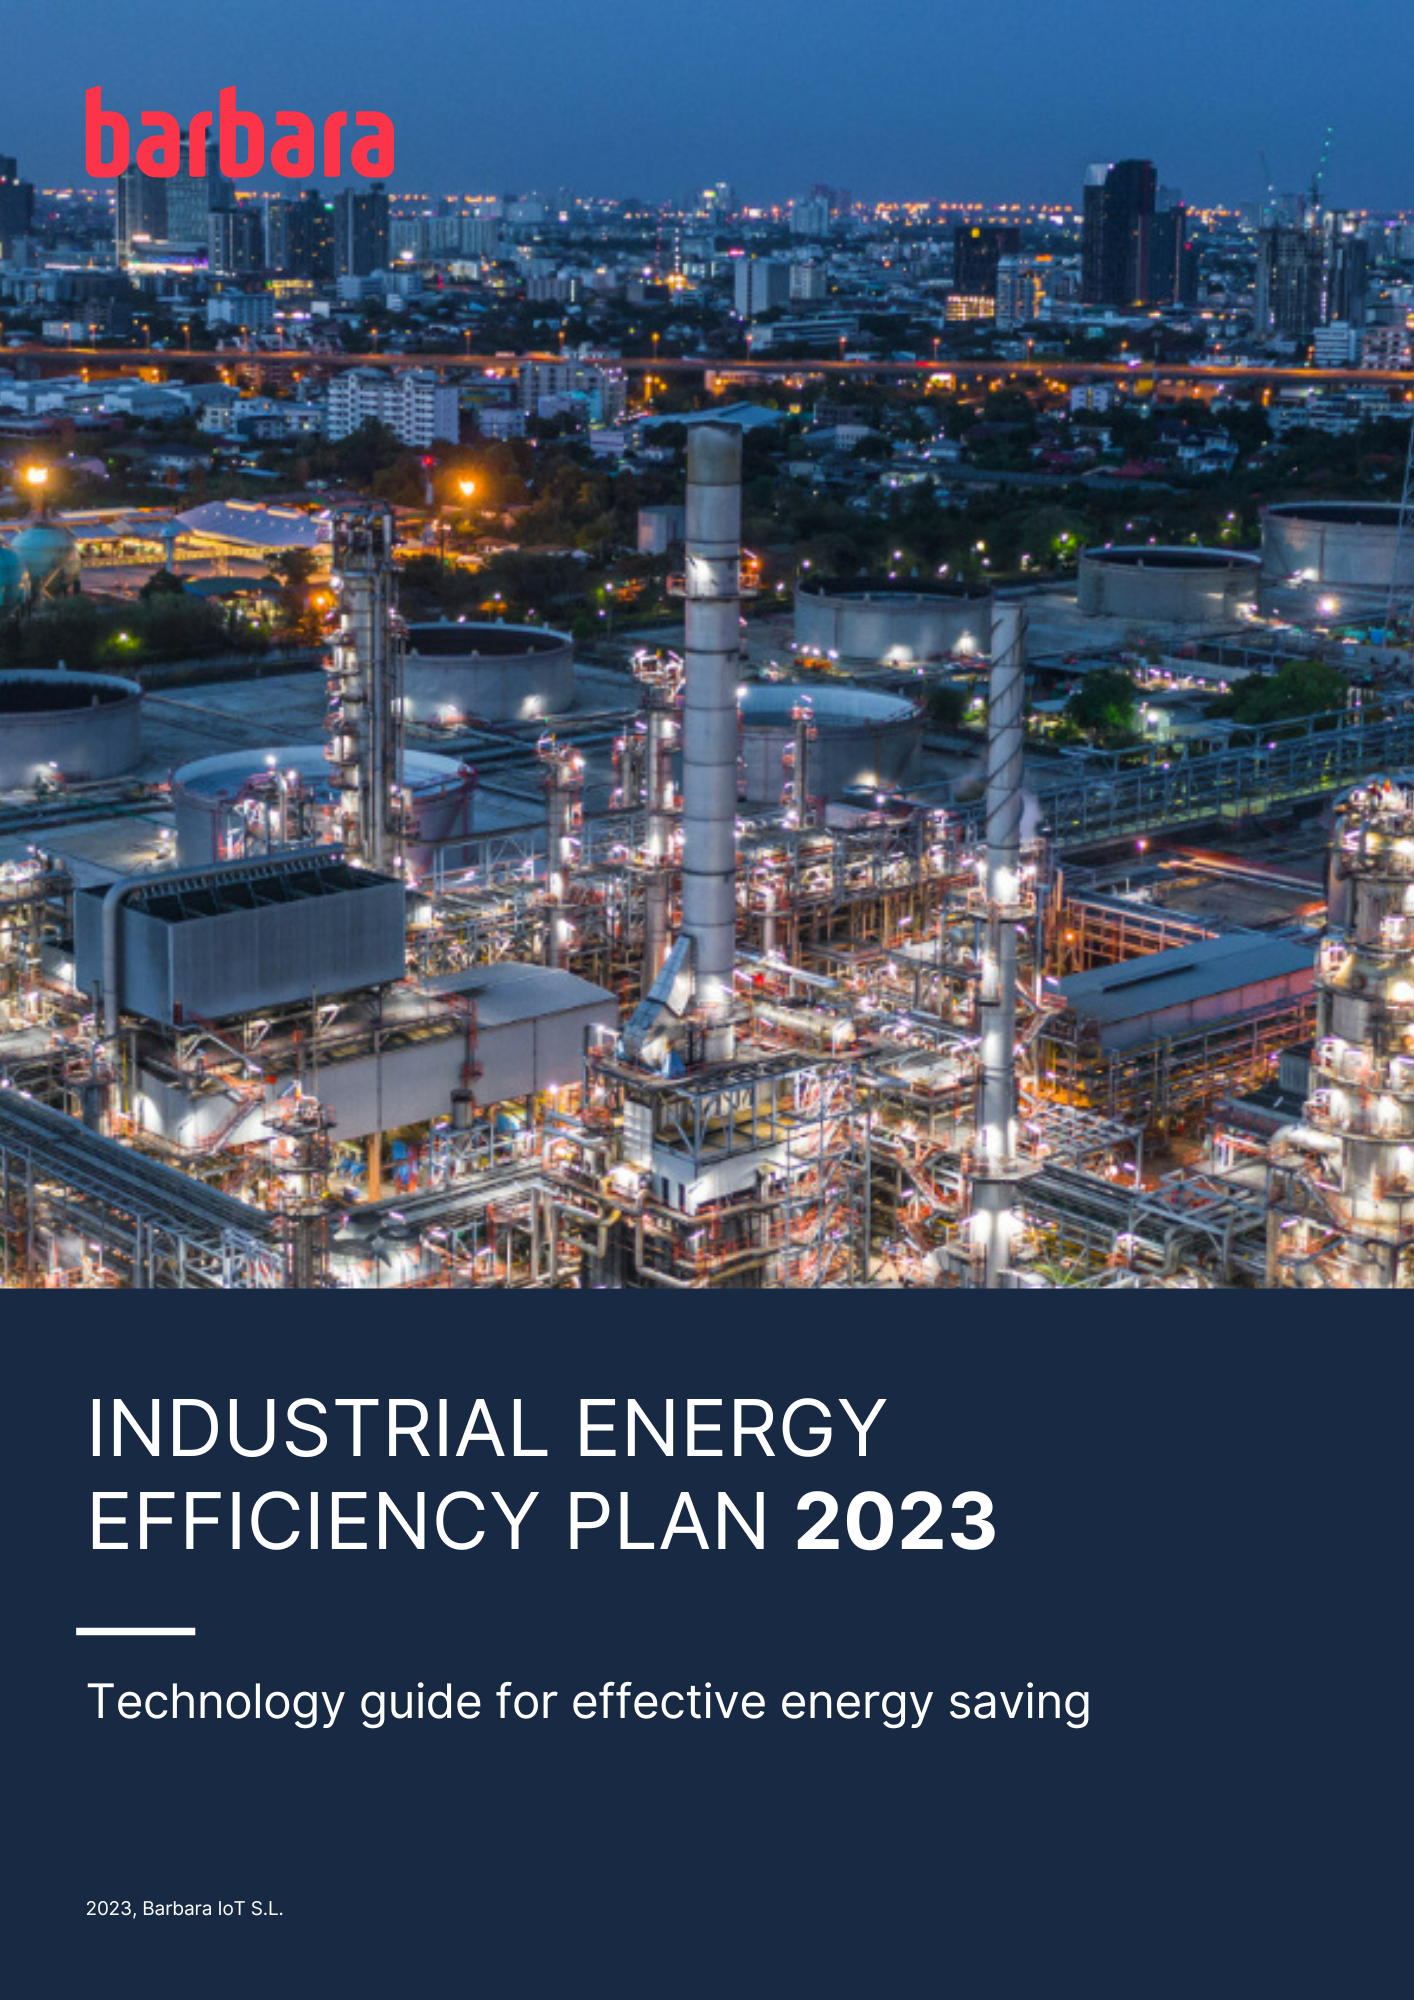 Borrador Industrial Energy Efficiency Plan 2023